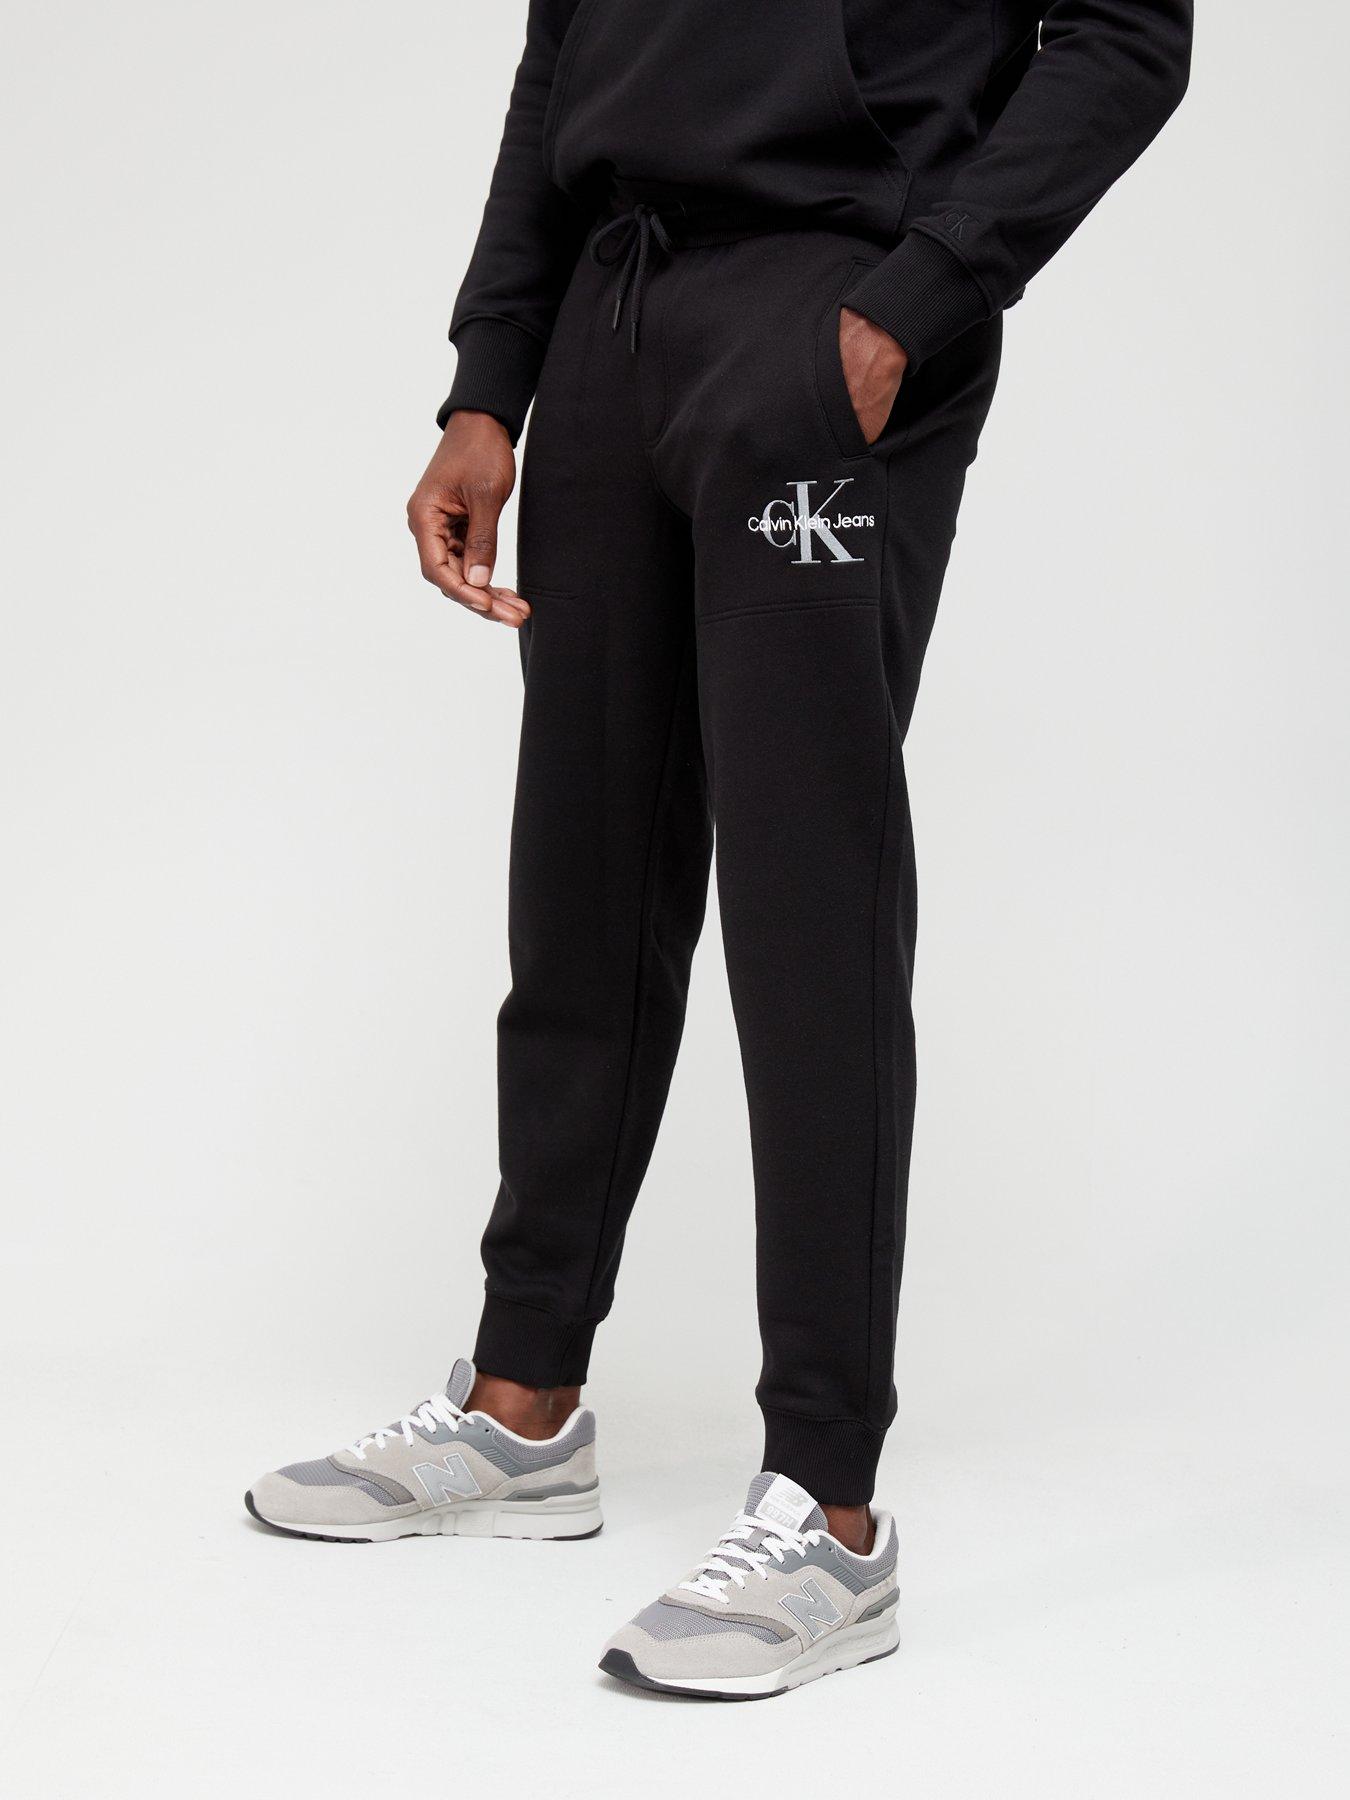 Tracksuit for Men,Jogging Zip Pockets Joggers Gym Sportsweat Suit M-3XL. 